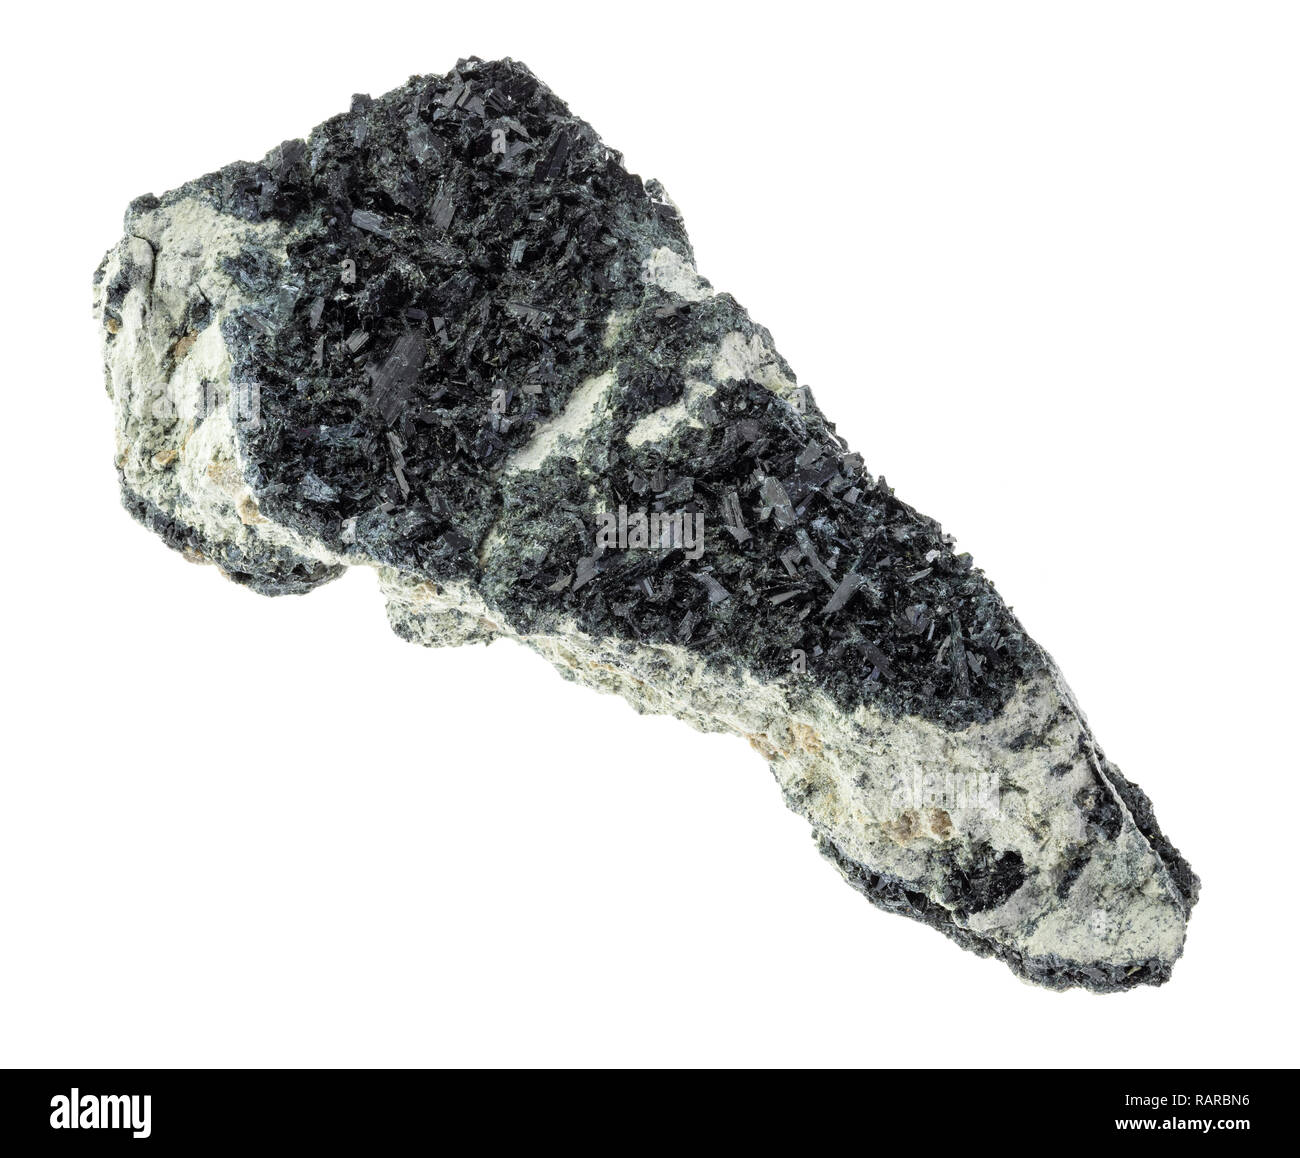 Makrofotografie von natürlichen Mineral aus geologische Sammlung - hornblende Kristalle auf rauen amphibole - karbonatfelsen auf weißem Hintergrund Stockfoto